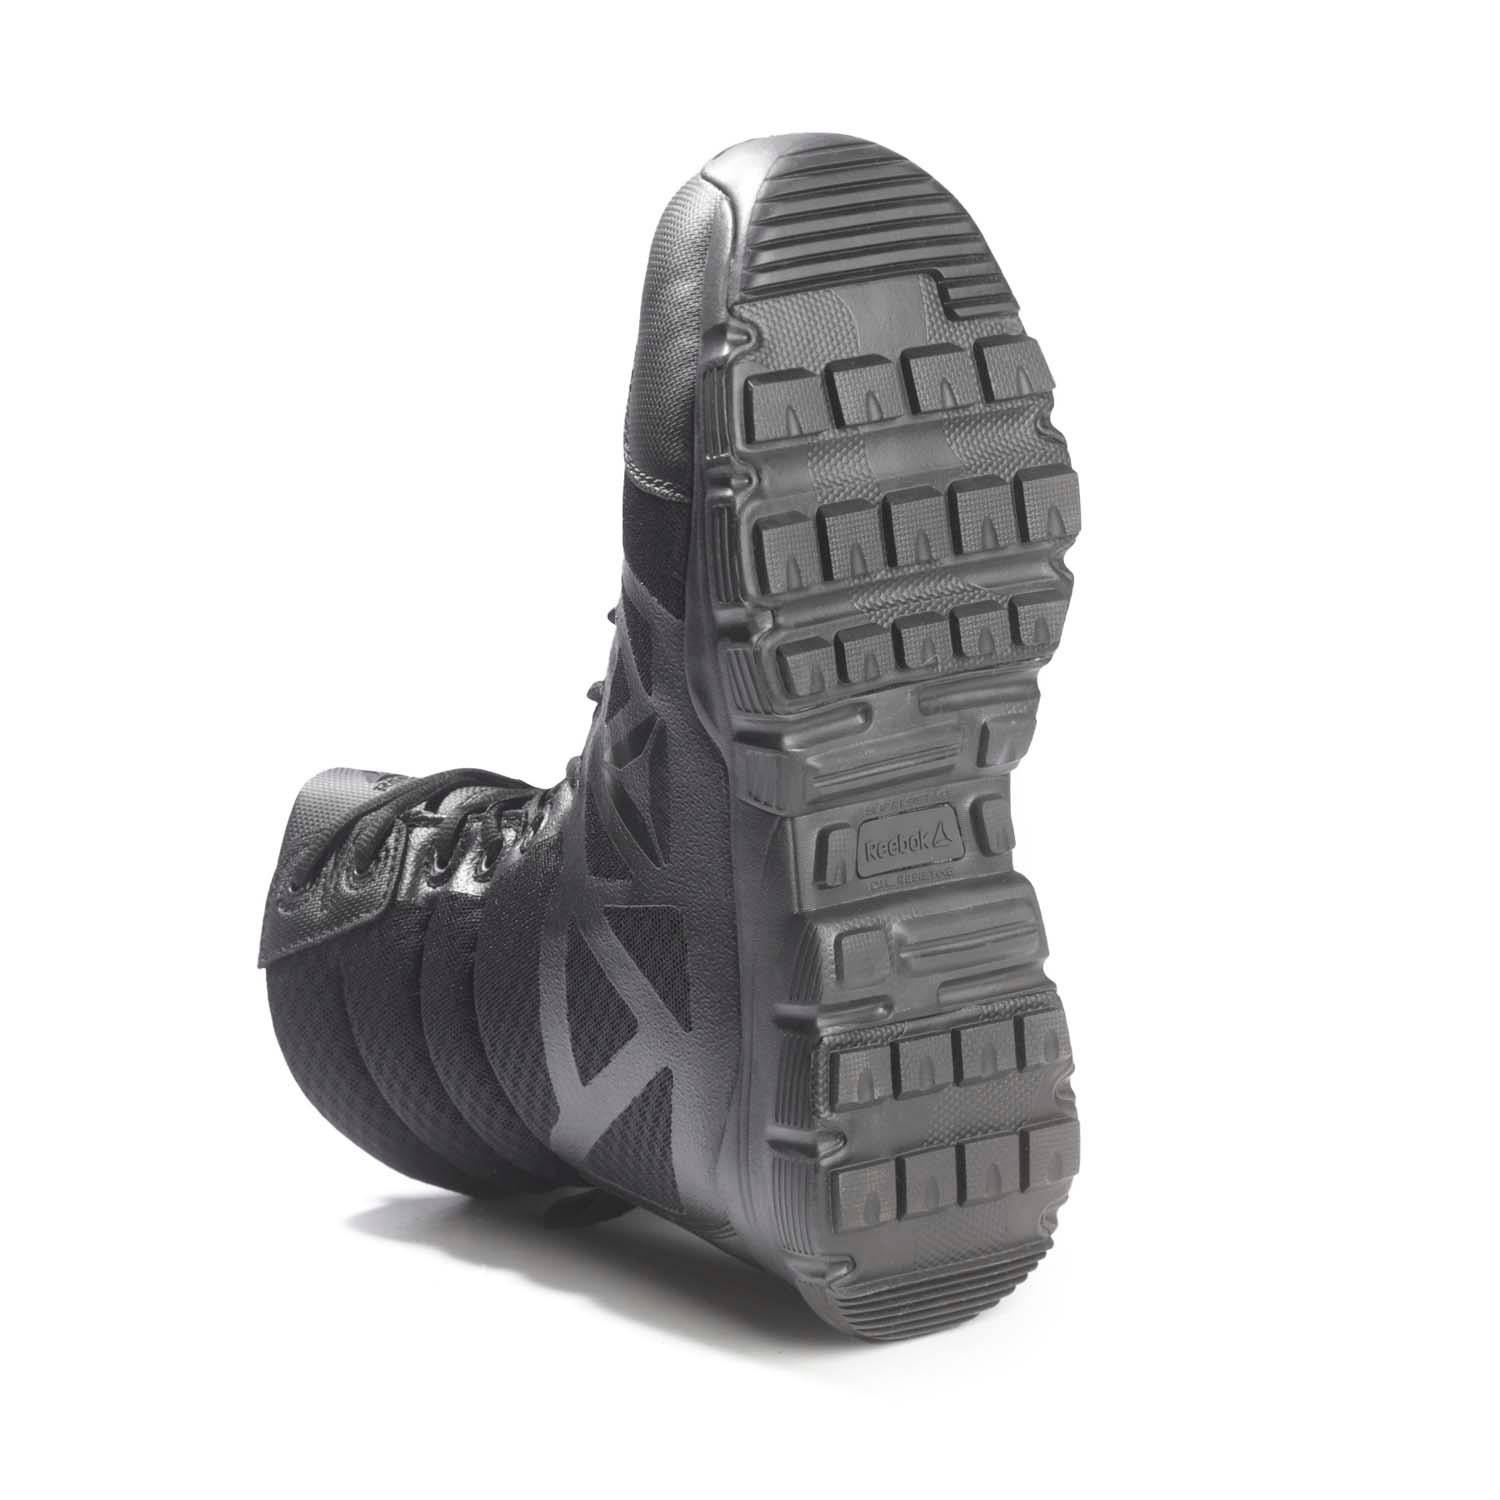 reebok men's 8 dauntless side zip duty boots